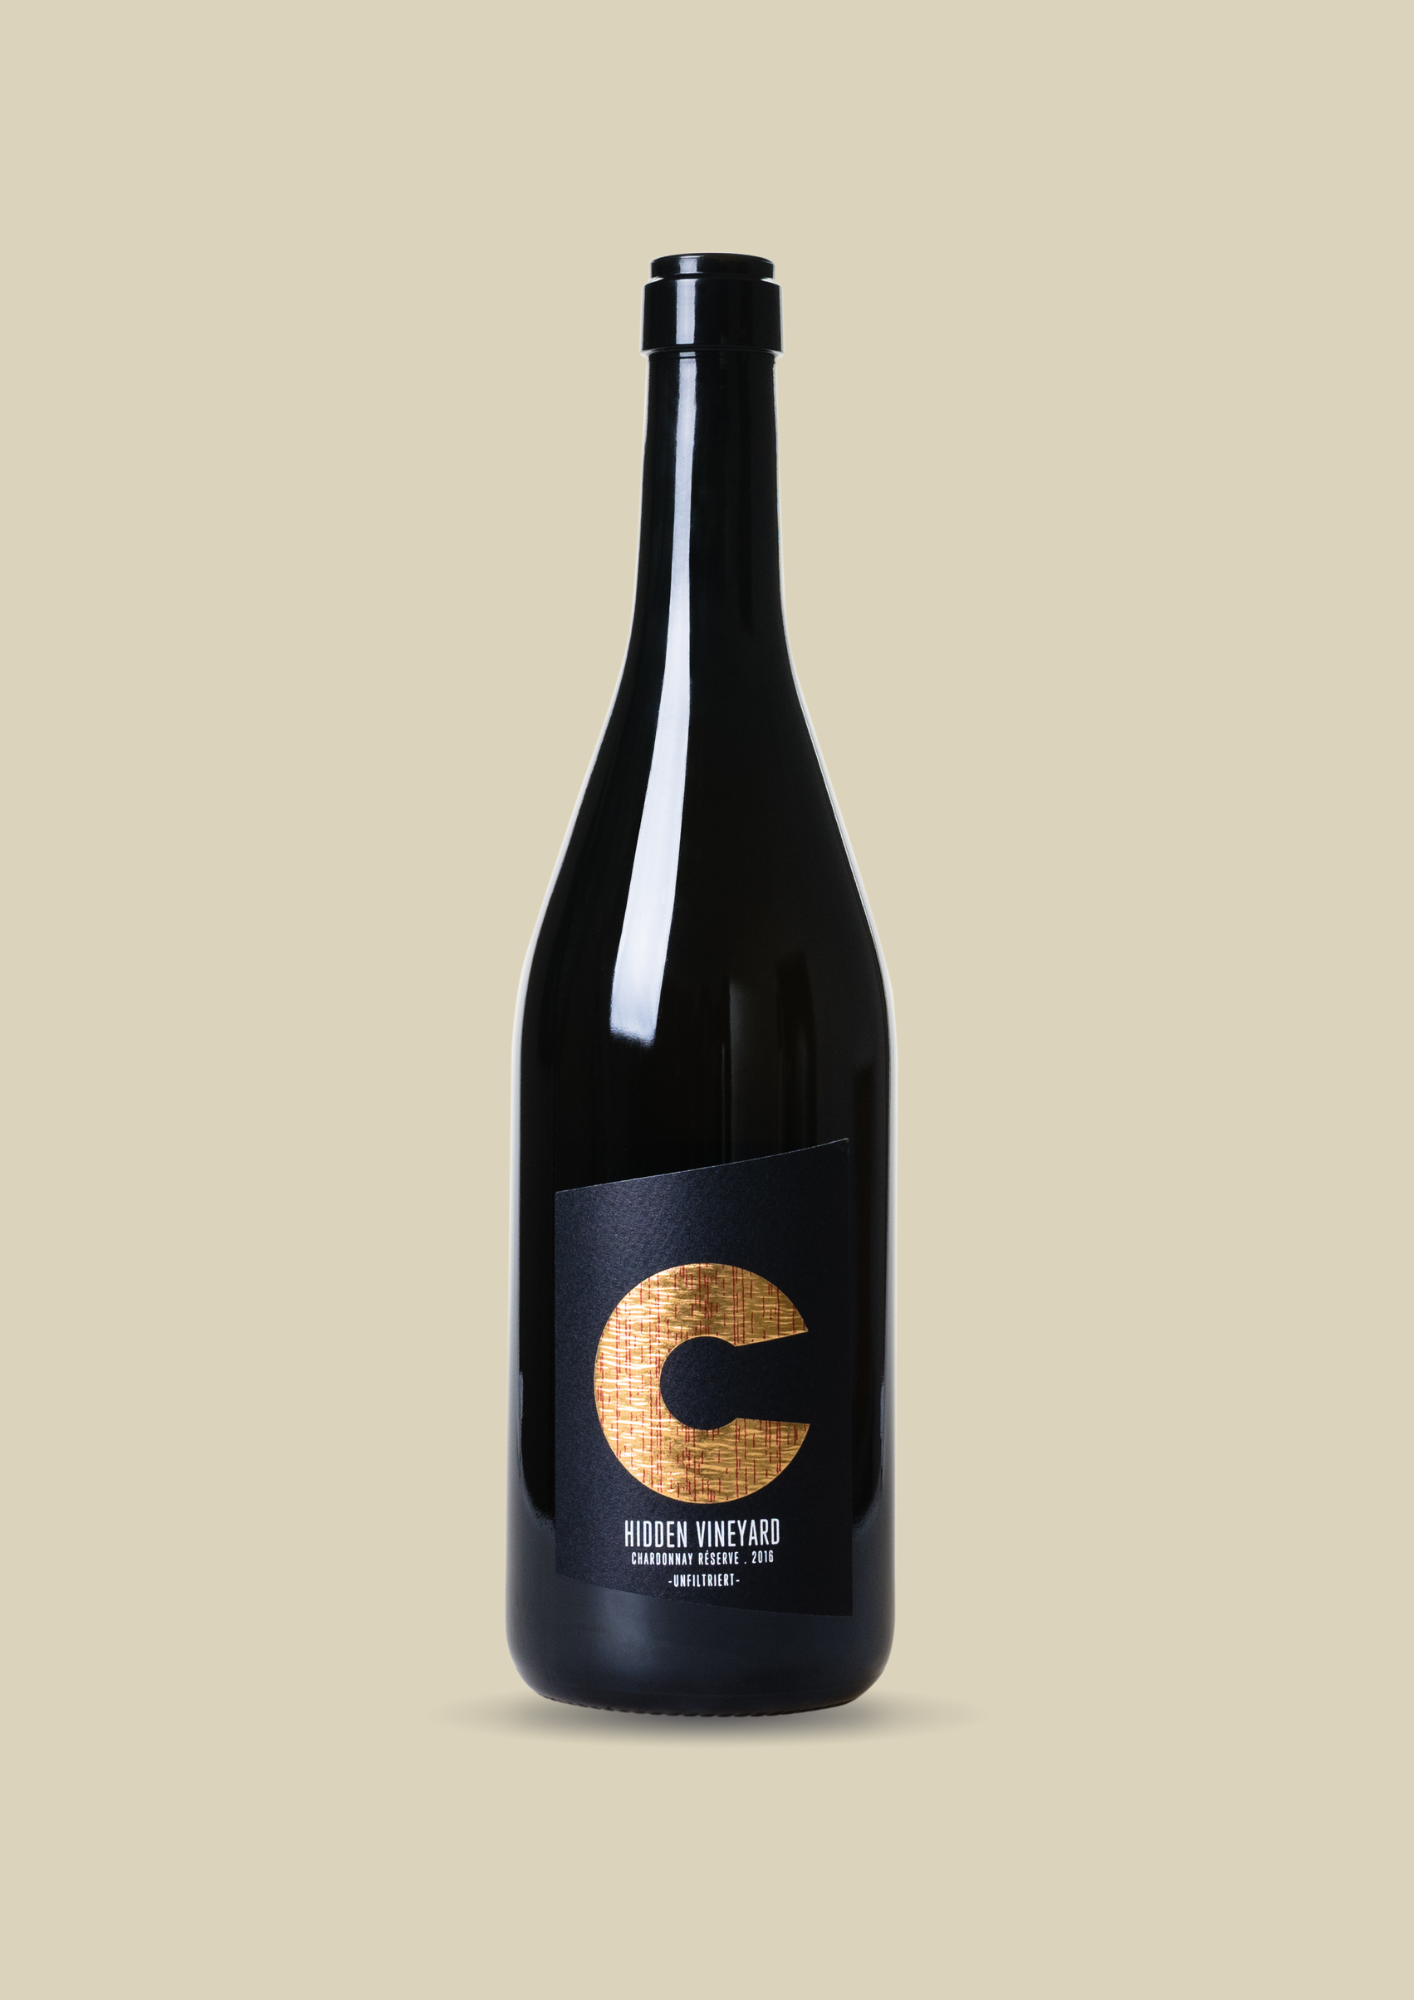 Hidden Vineyard Chardonnay Réserve 2016